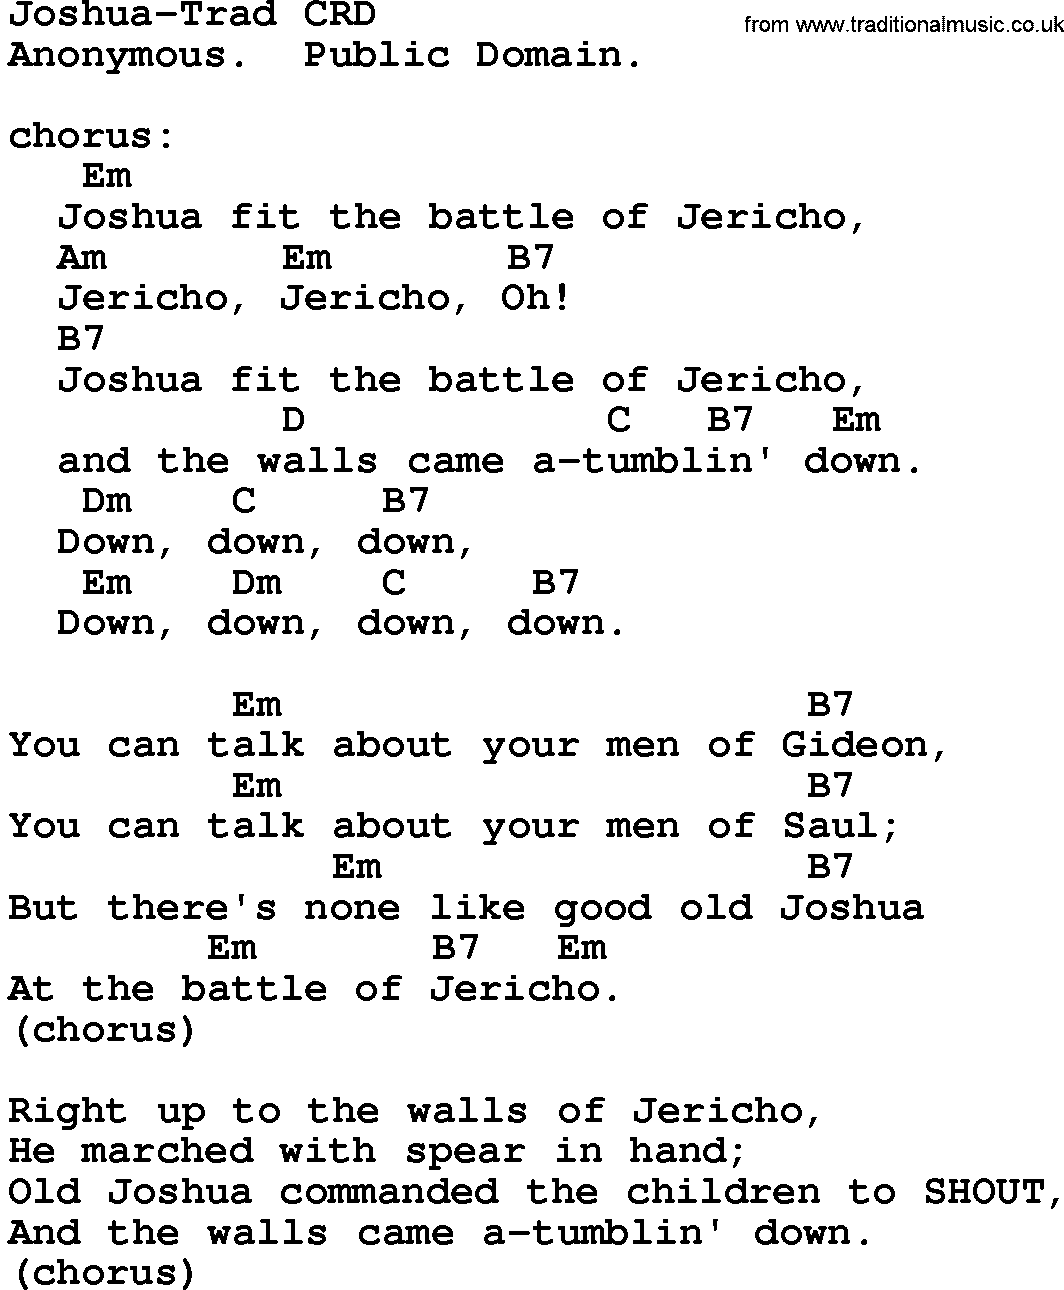 Gospel Song: Joshua-Trad, lyrics and chords.